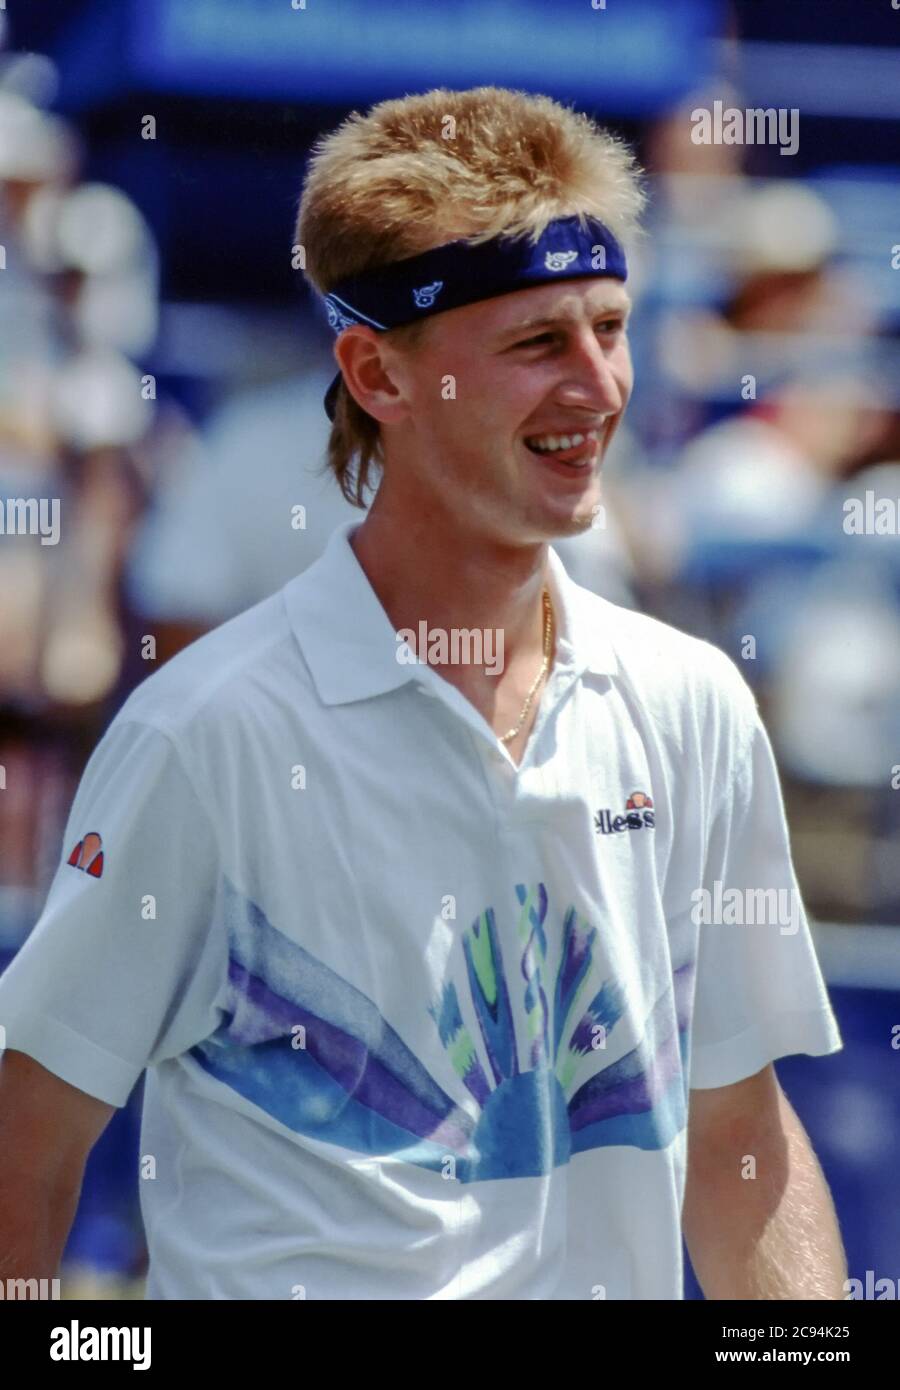 Le joueur de tennis Peter Korda pendant un match. Banque D'Images